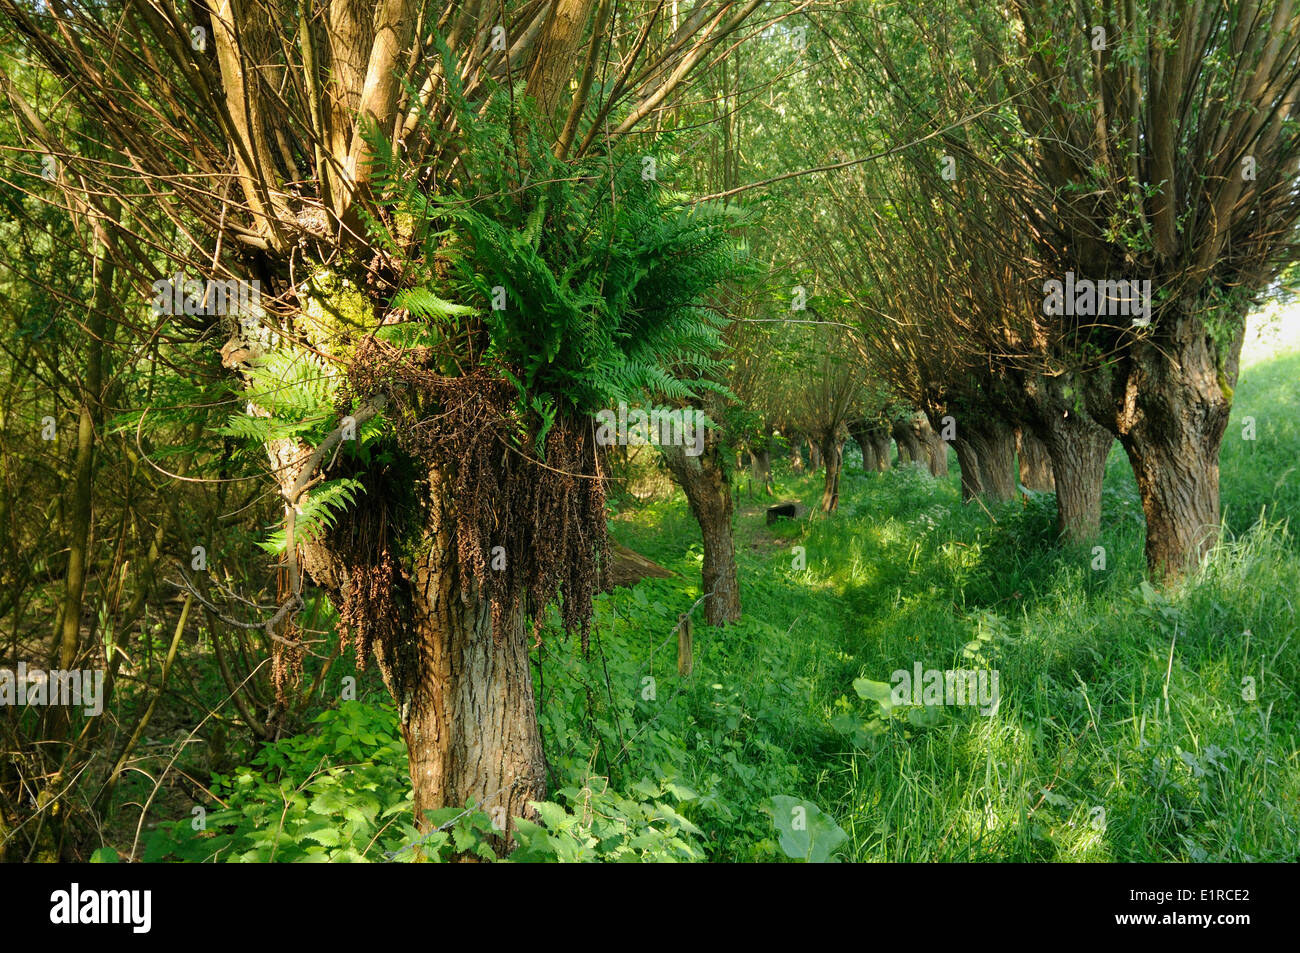 Male Fern growing in pillard willow Stock Photo